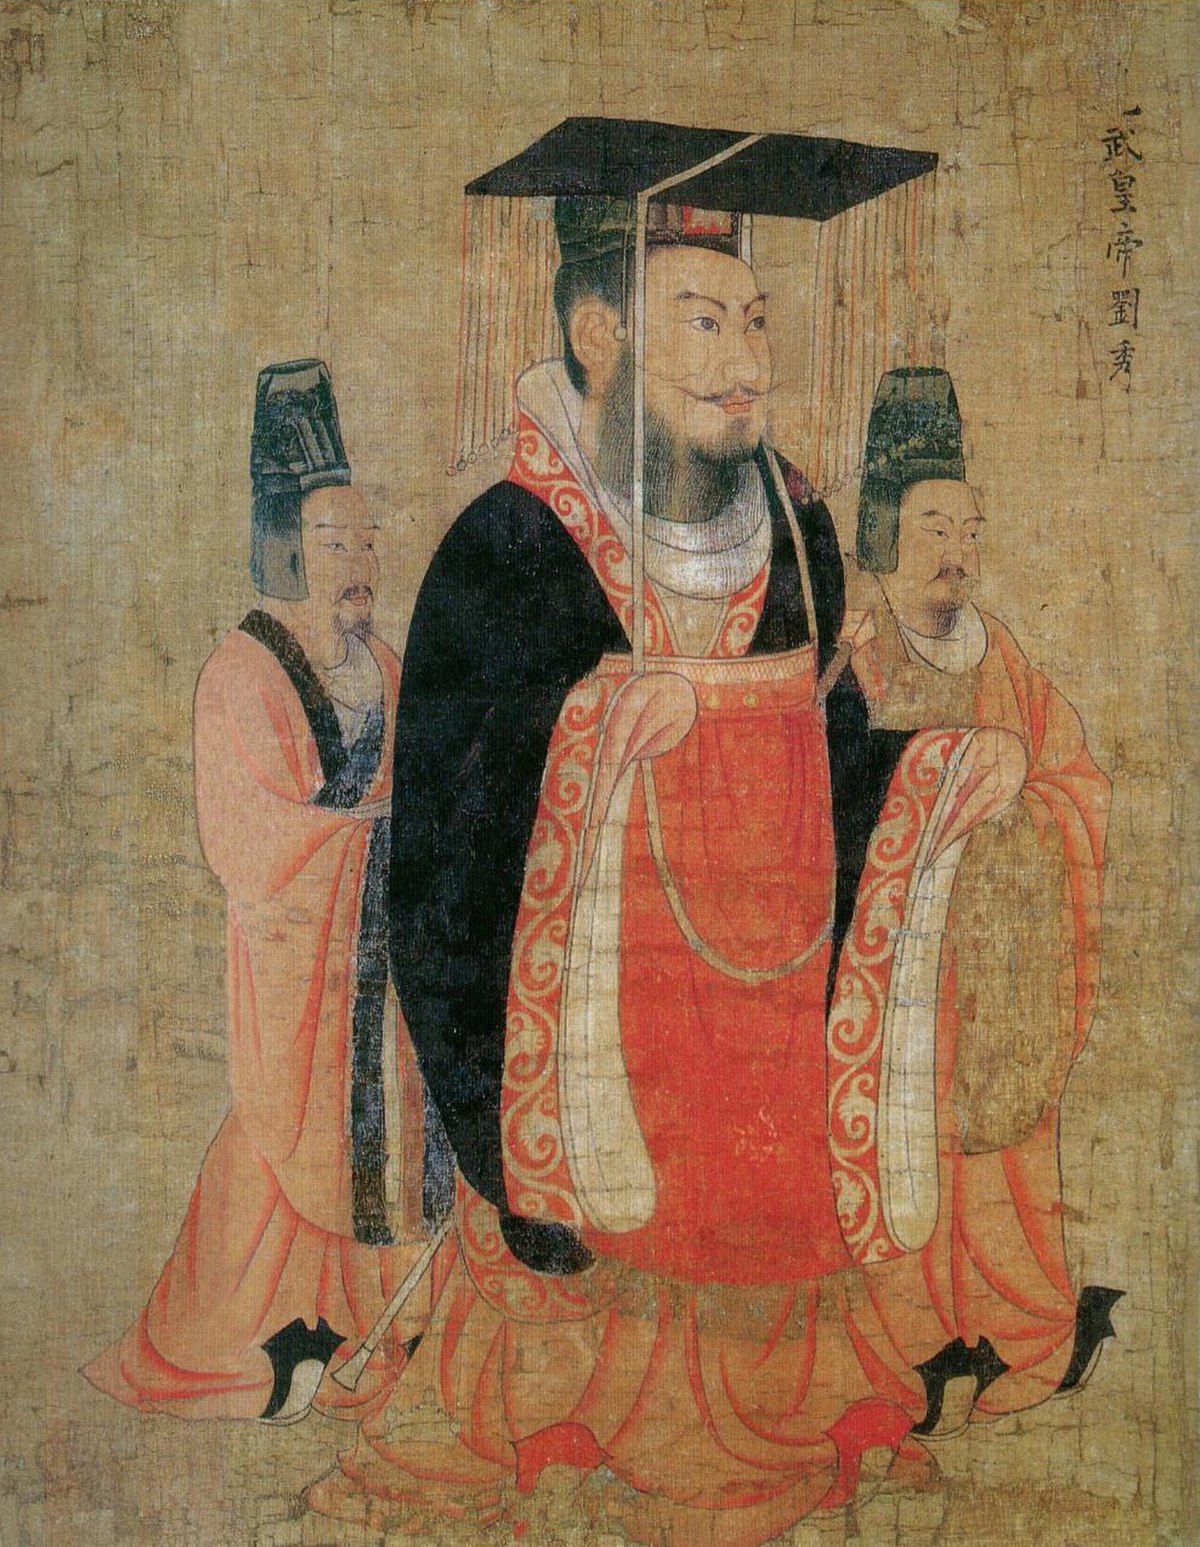 Han Dynasty reinstated